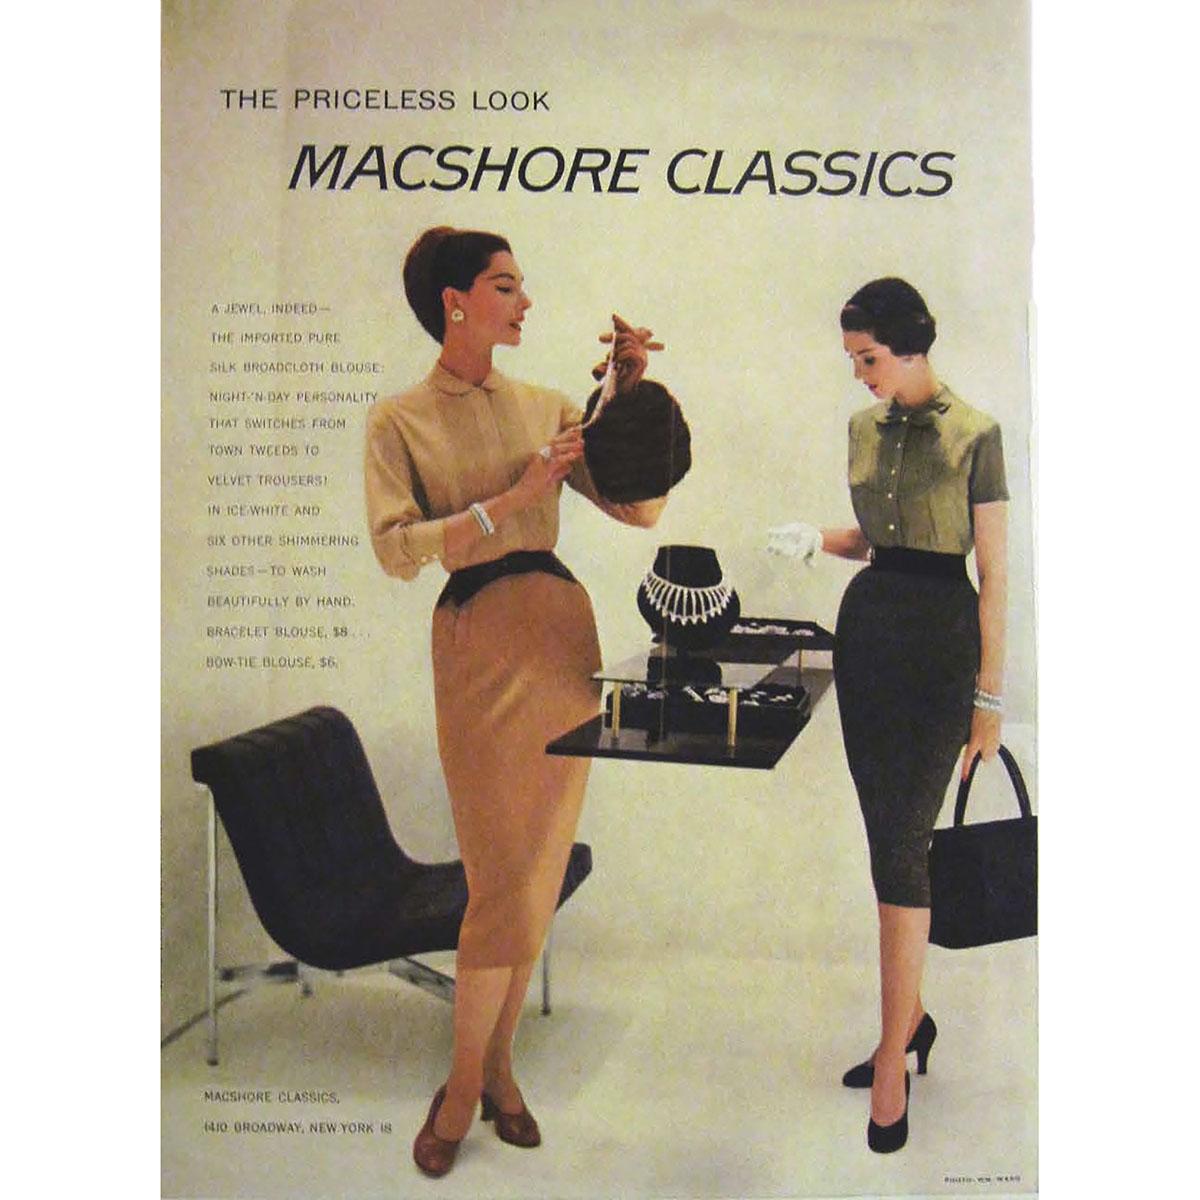 1955 Macshore Classics advertisement